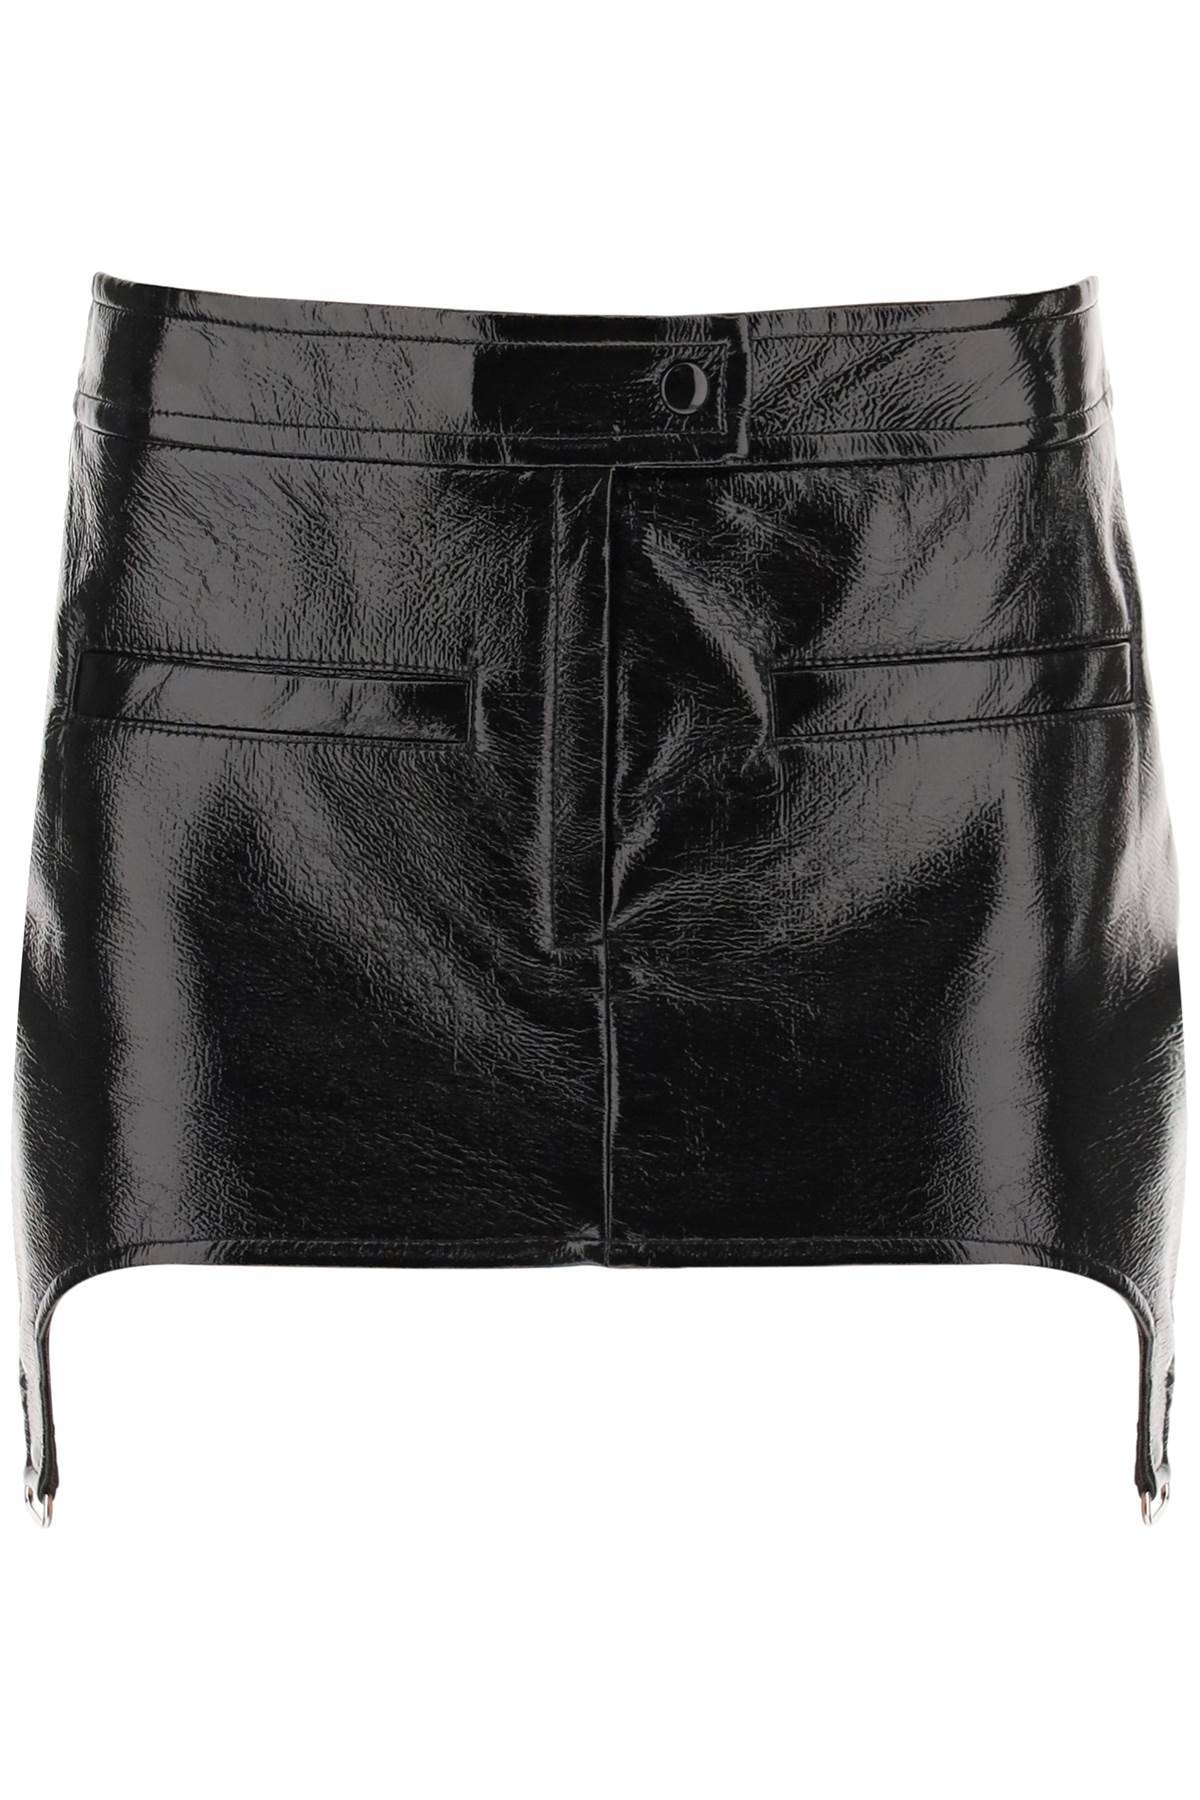 Courrèges COURREGES vinyl effect mini skirt with suspenders